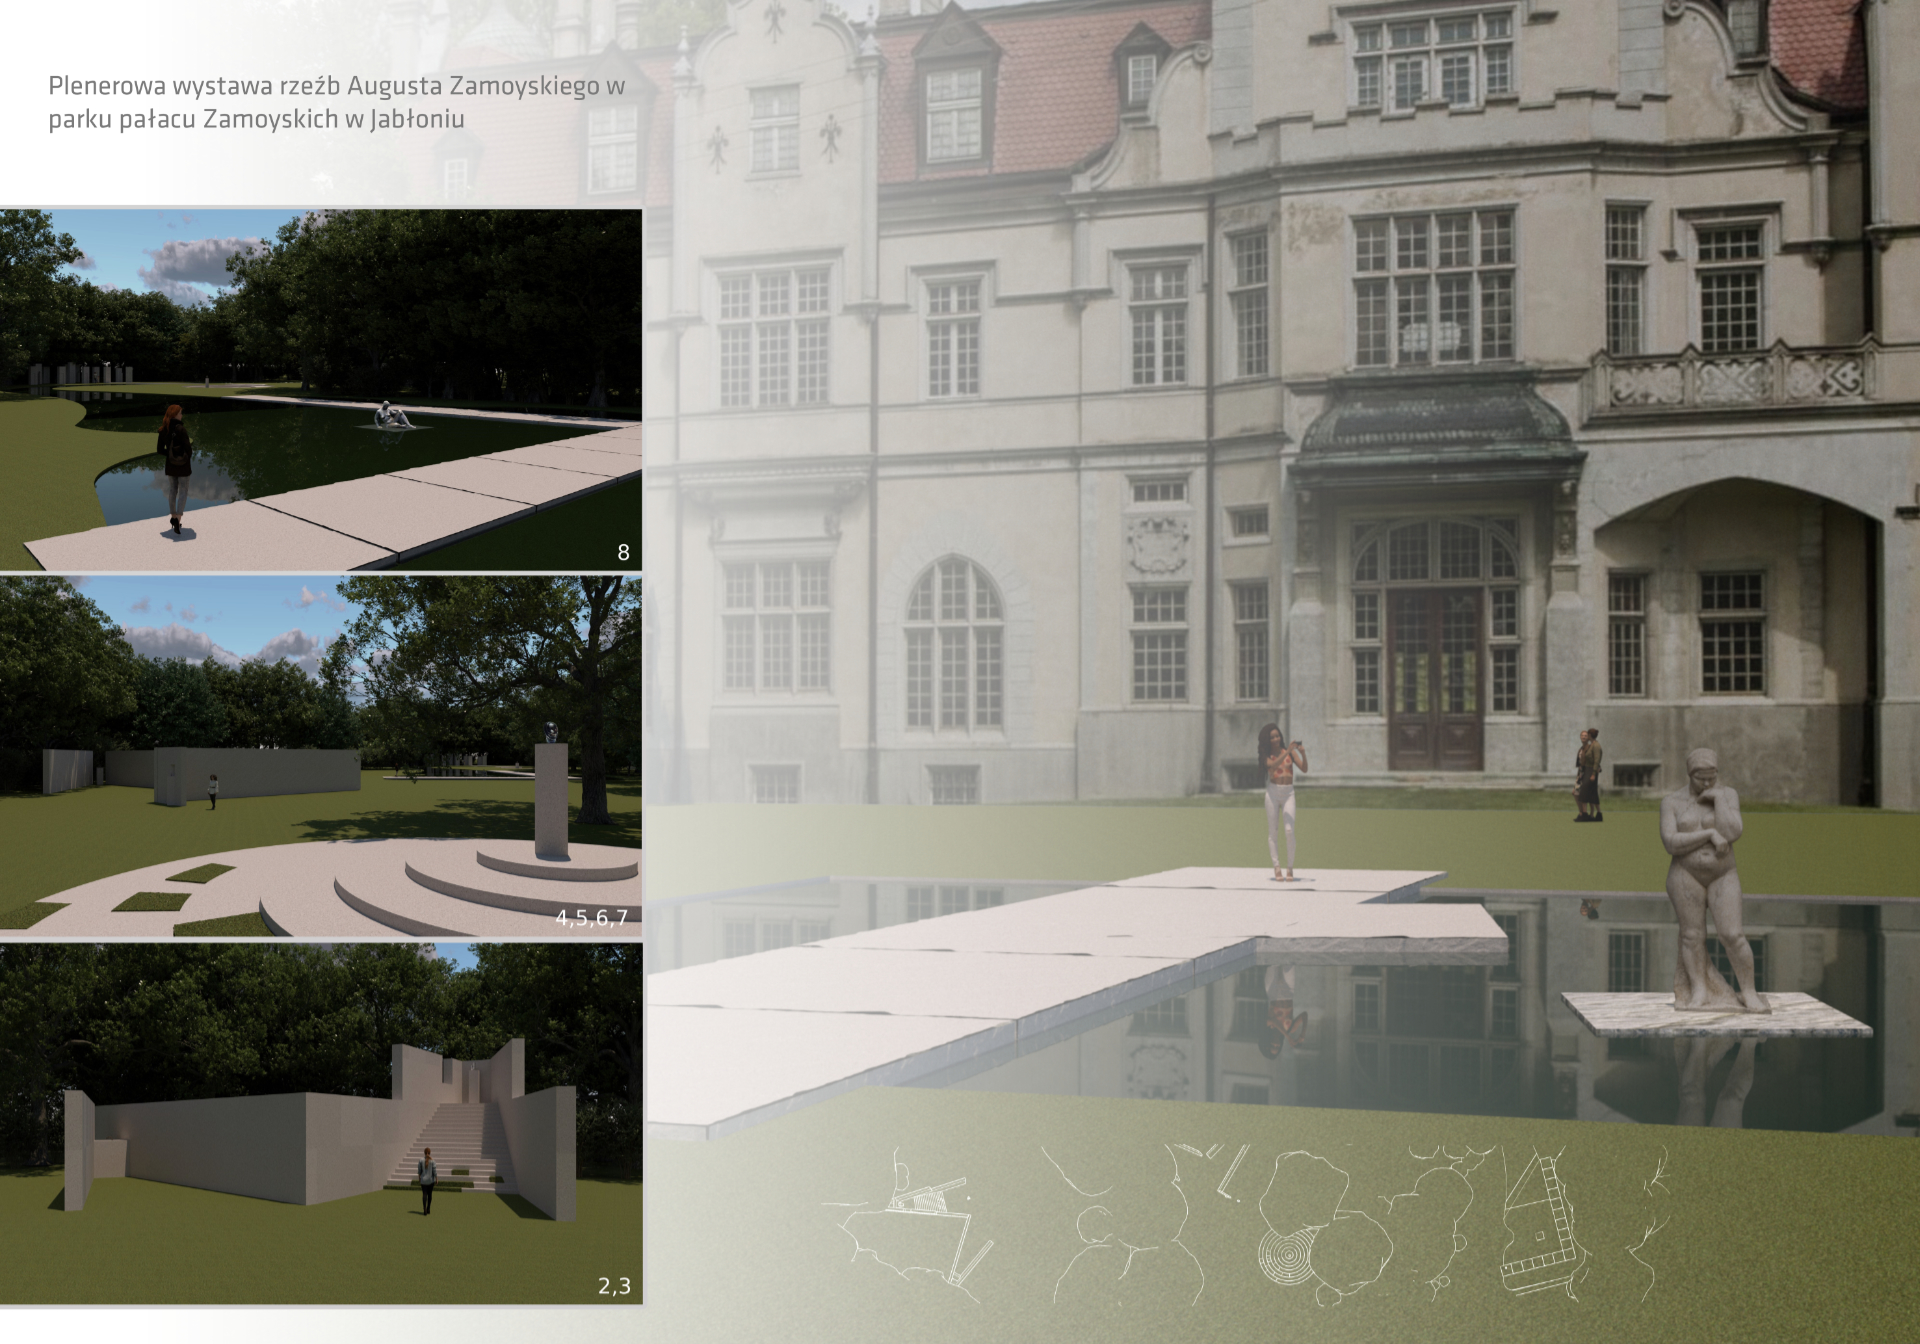 Projekt koncepcyjny wystawy plenerowej w parku pałacu Zamoyskich w Jabłoniu, zawierający komputerowe wizualizacje barwnych widoków perspektywicznych, ukazujących przestrzeń ekspozycji z punktu widzenia osoby zwiedzającej oraz rzuty.